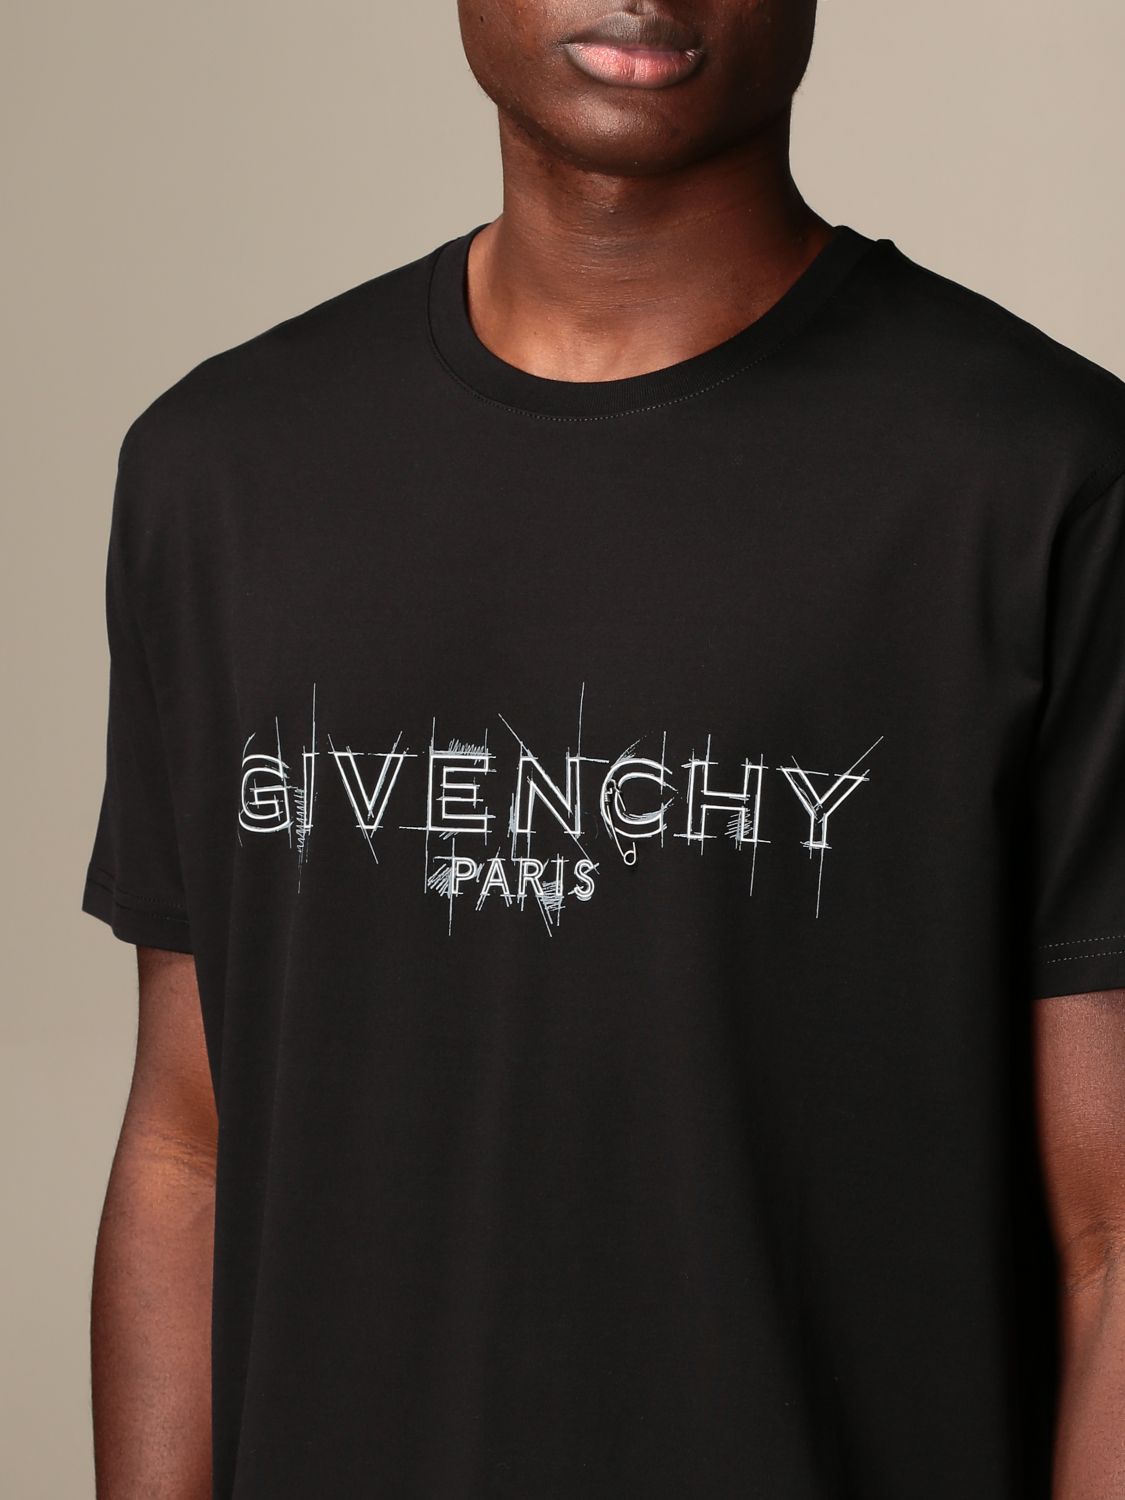 T Shirt Herren Givenchy T Shirt Givenchy Herren Schwarz T Shirt Givenchy Bm70zq3002 Giglio De